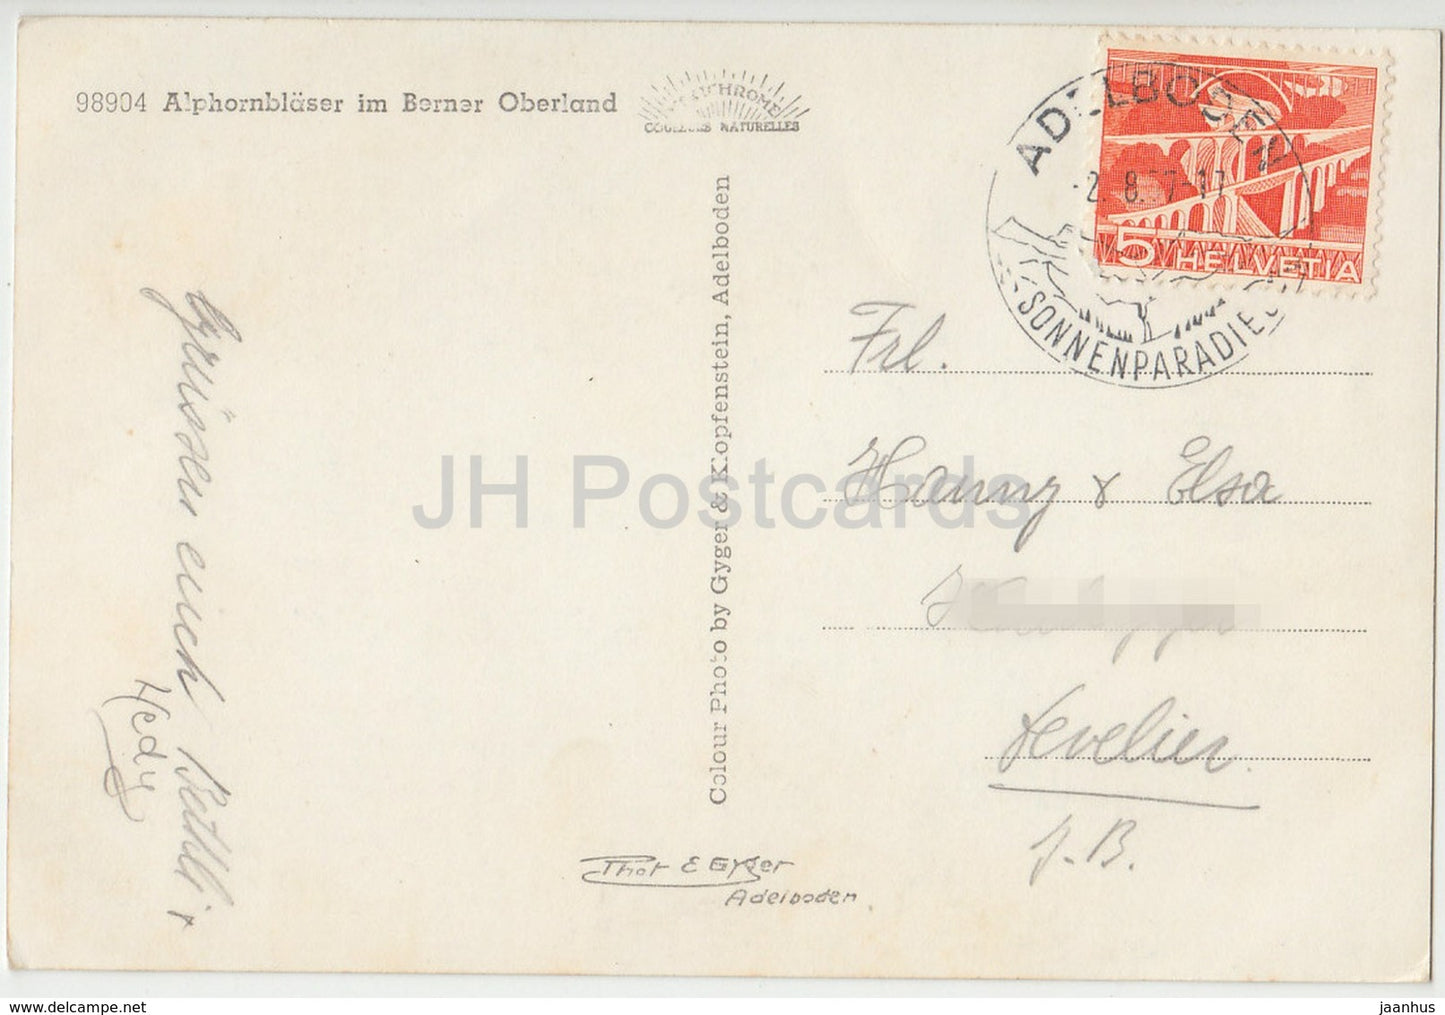 Alphornblaser im Berner Oberland - Volkstrachten - 98904 - Schweiz - 1957 - gebraucht